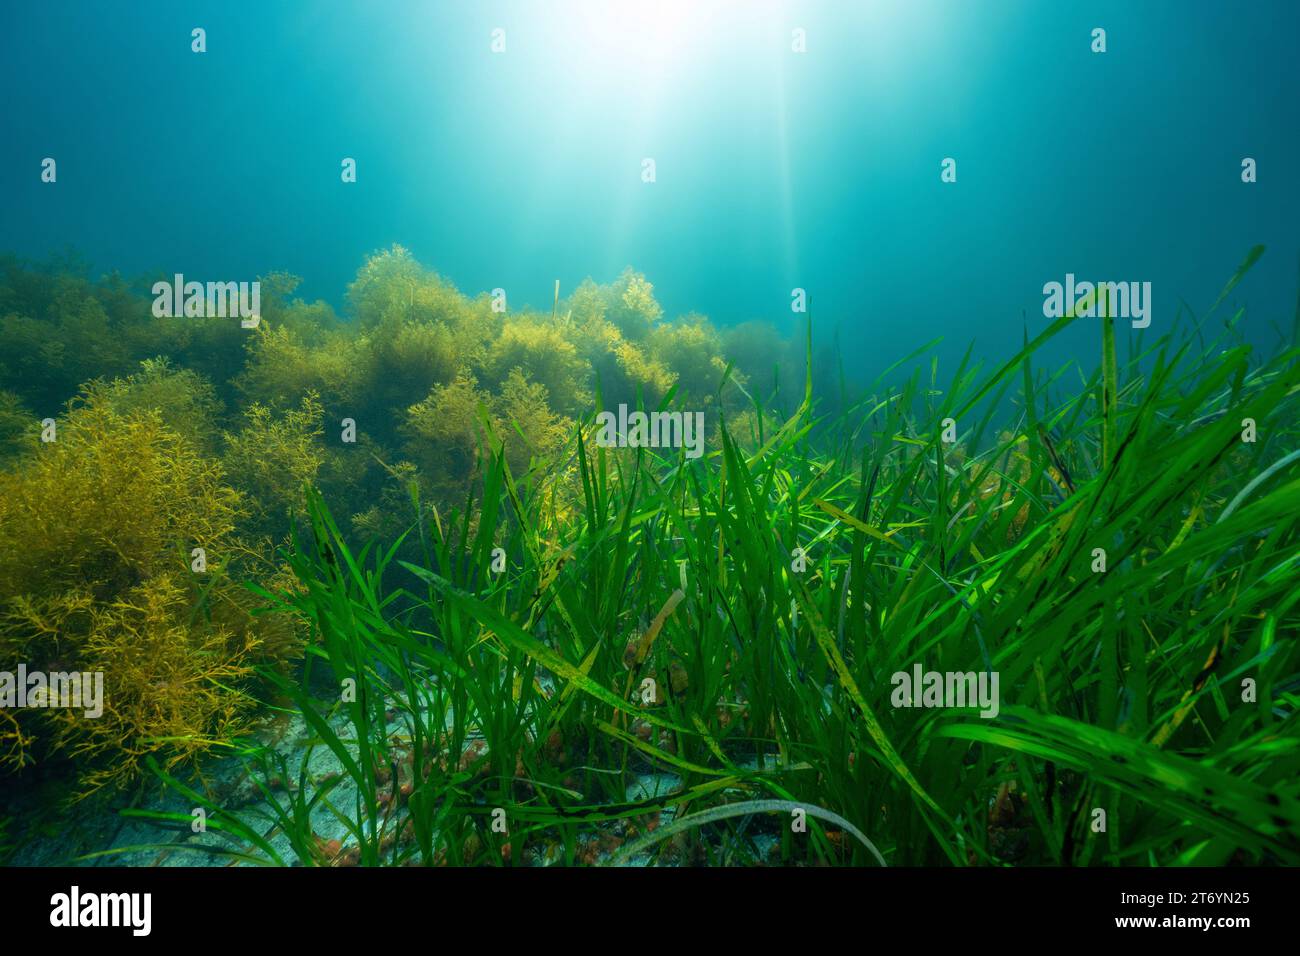 Seegras und Algen mit Sonnenlicht unter Wasser im Atlantischen Ozean, natürliche Szene, Seegras Zostera Marina und Cystoseira baccata Algen, Spanien Stockfoto